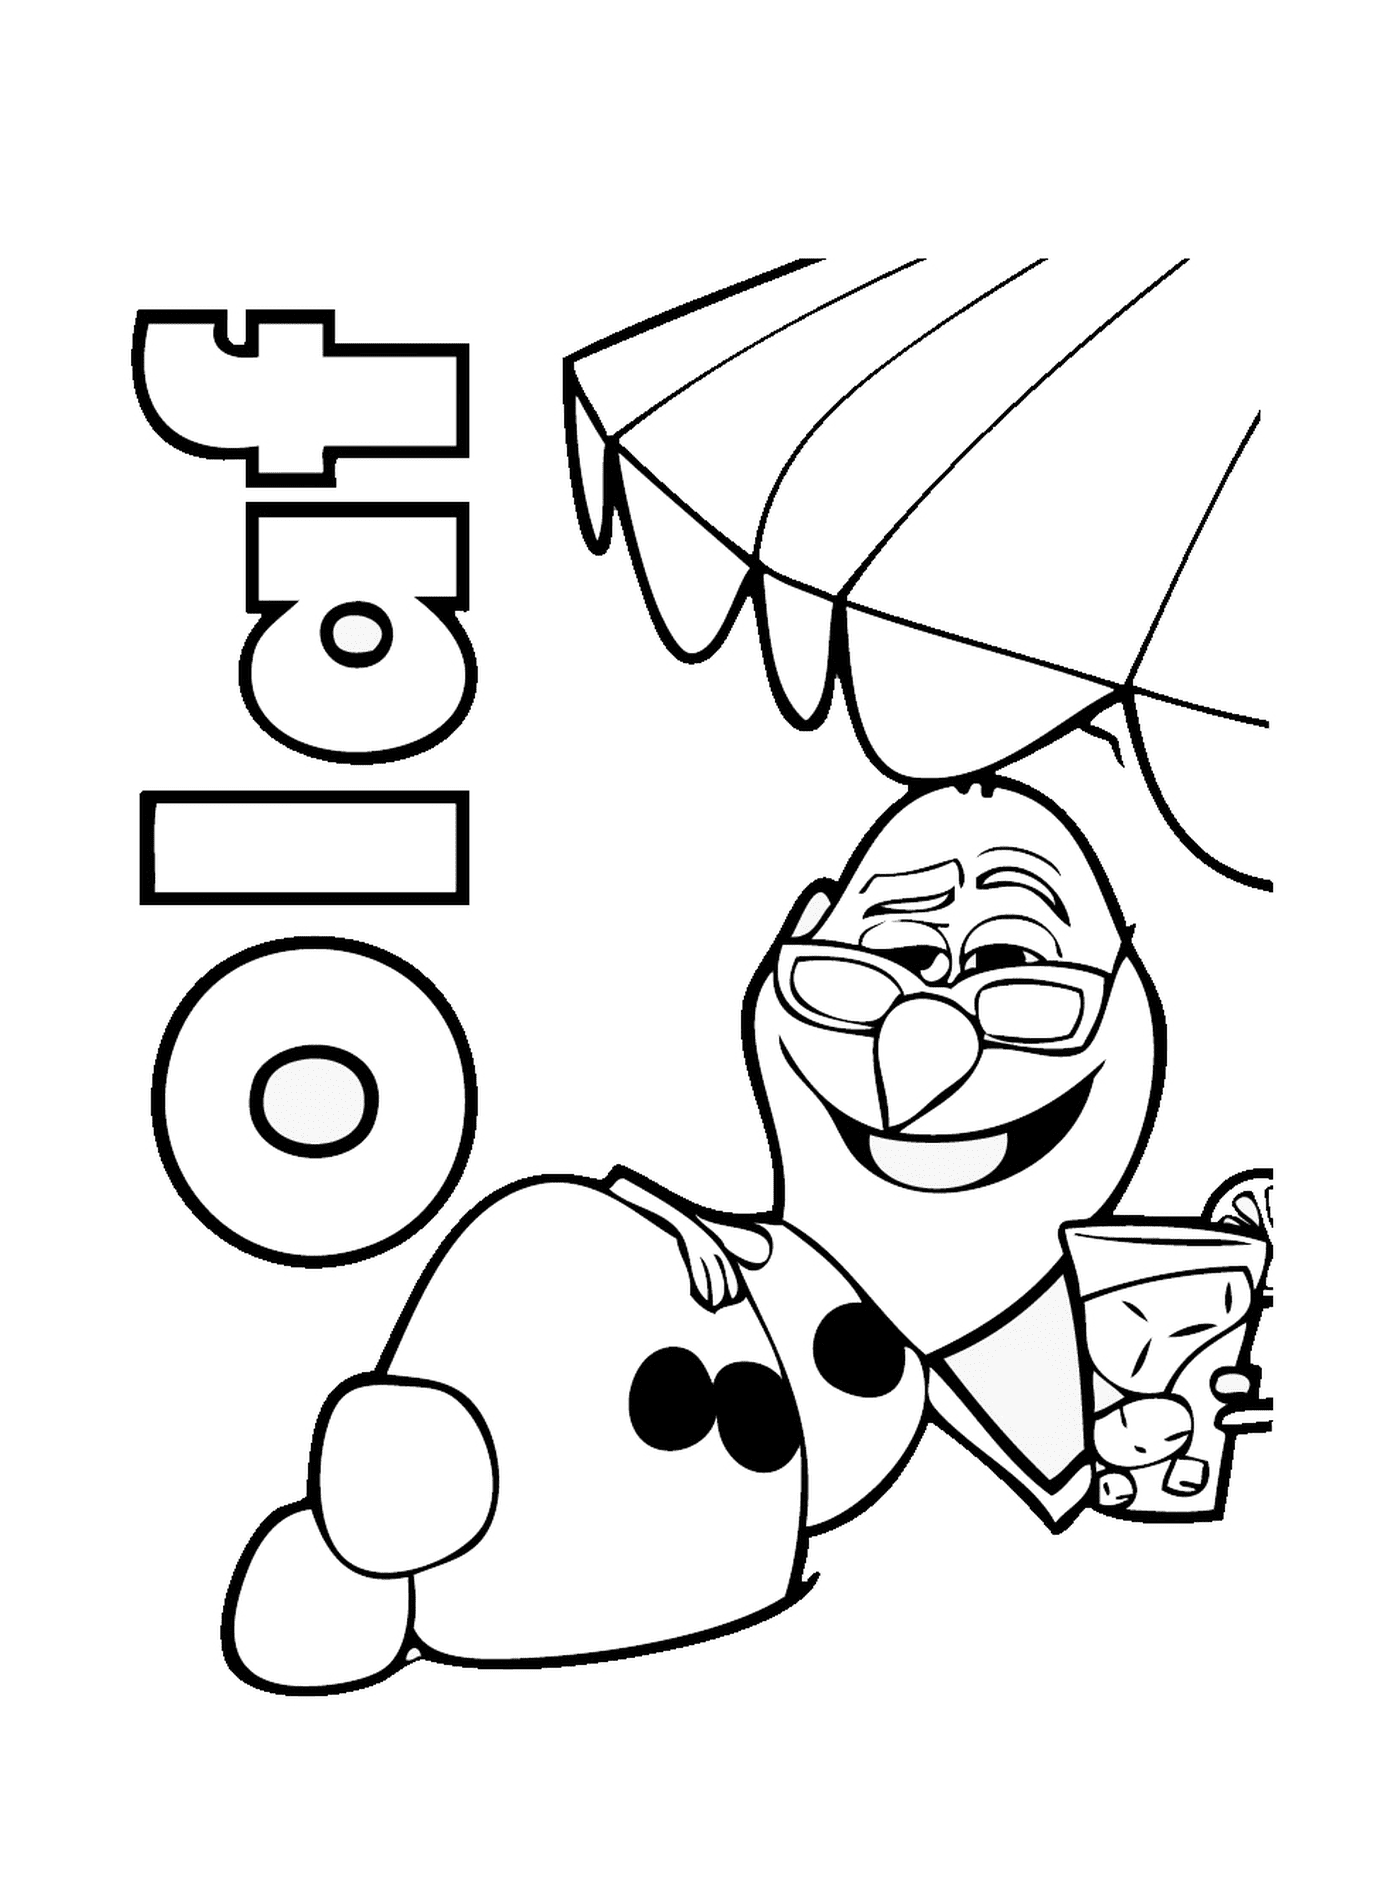  Olaf bebe chá gelado na praia 